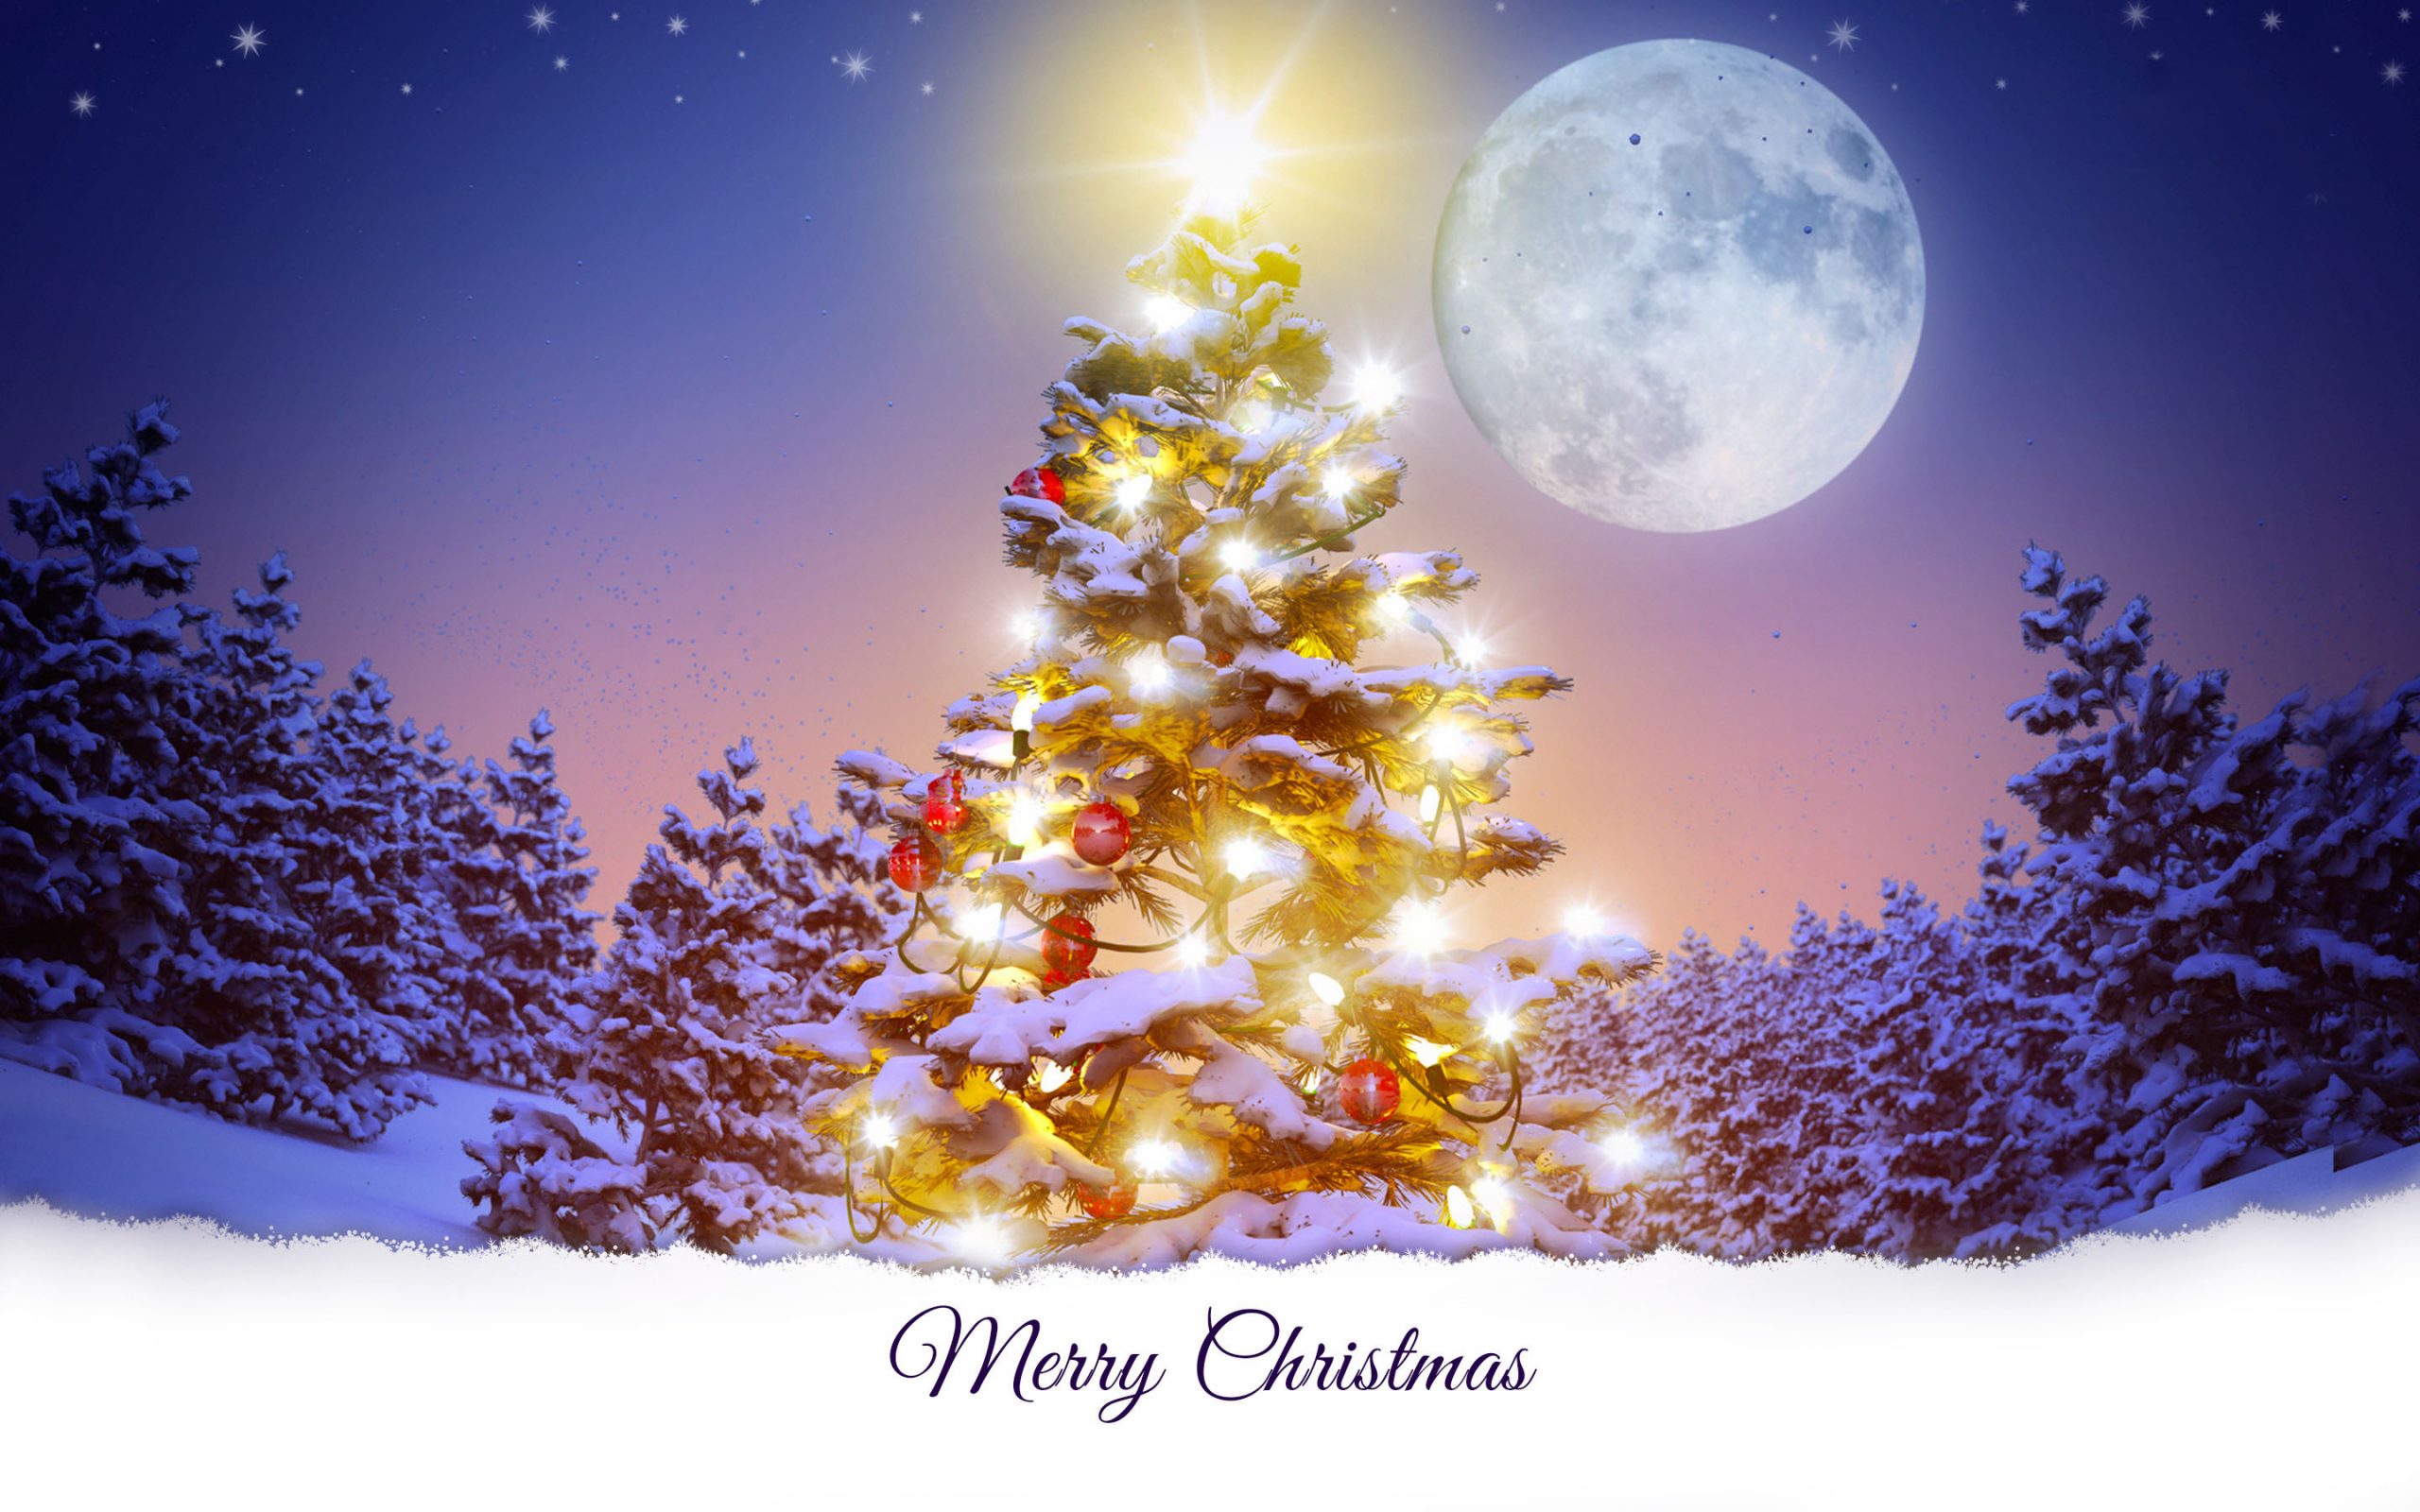 50 hình nền cây thông Noel đẹp lung linh nhất cho Giáng Sinh  TRẦN HƯNG ĐẠO